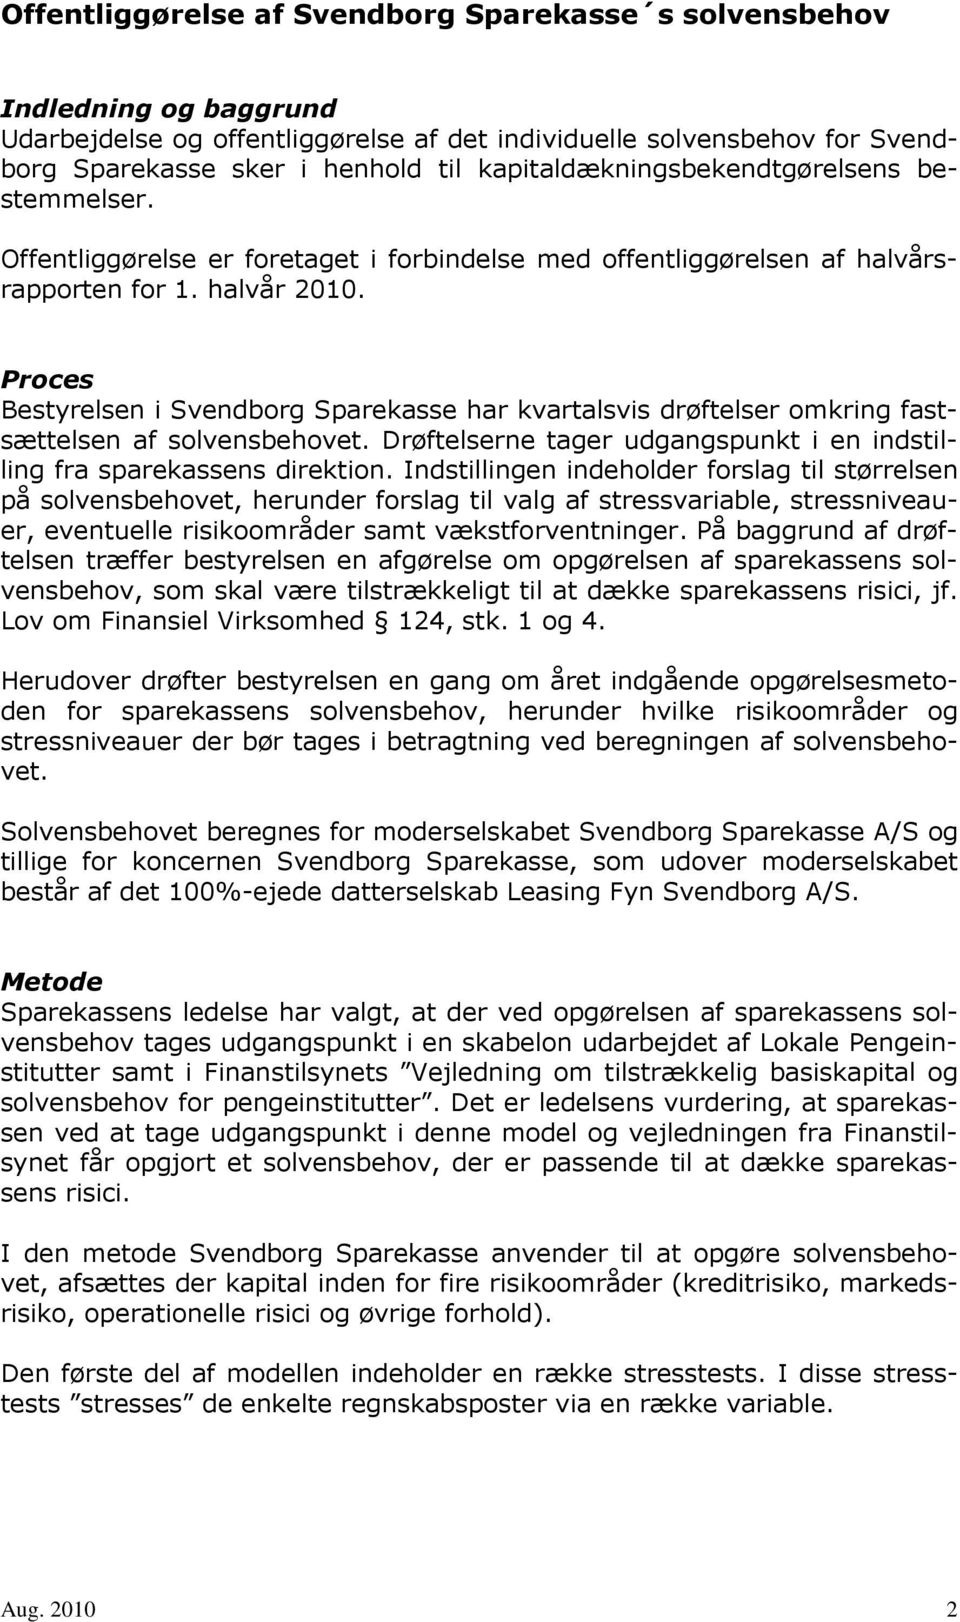 Proces Bestyrelsen i Svendborg Sparekasse har kvartalsvis drøftelser omkring fastsættelsen af solvensbehovet. Drøftelserne tager udgangspunkt i en indstilling fra sparekassens direktion.